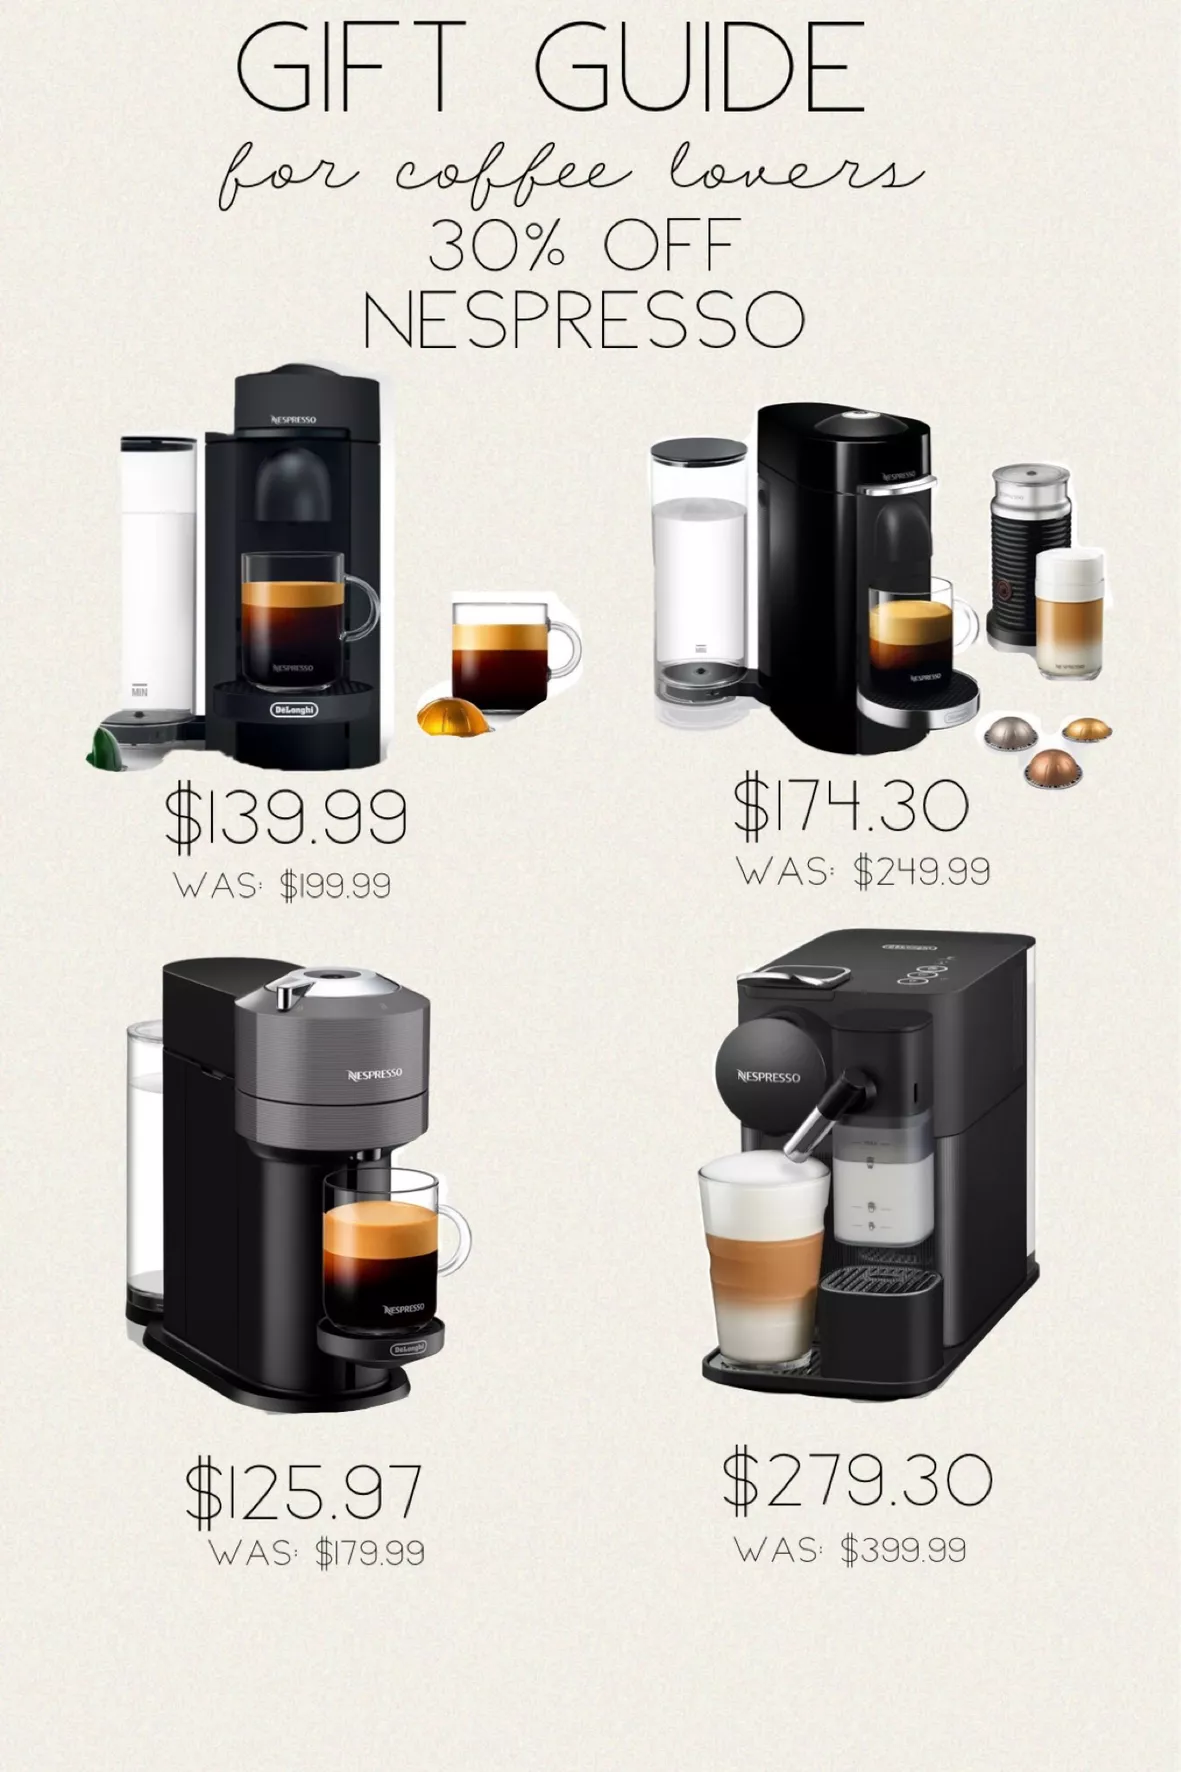 Nespresso VertuoPlus Coffee Maker and Espresso Machine by DeLonghi Black  Matte